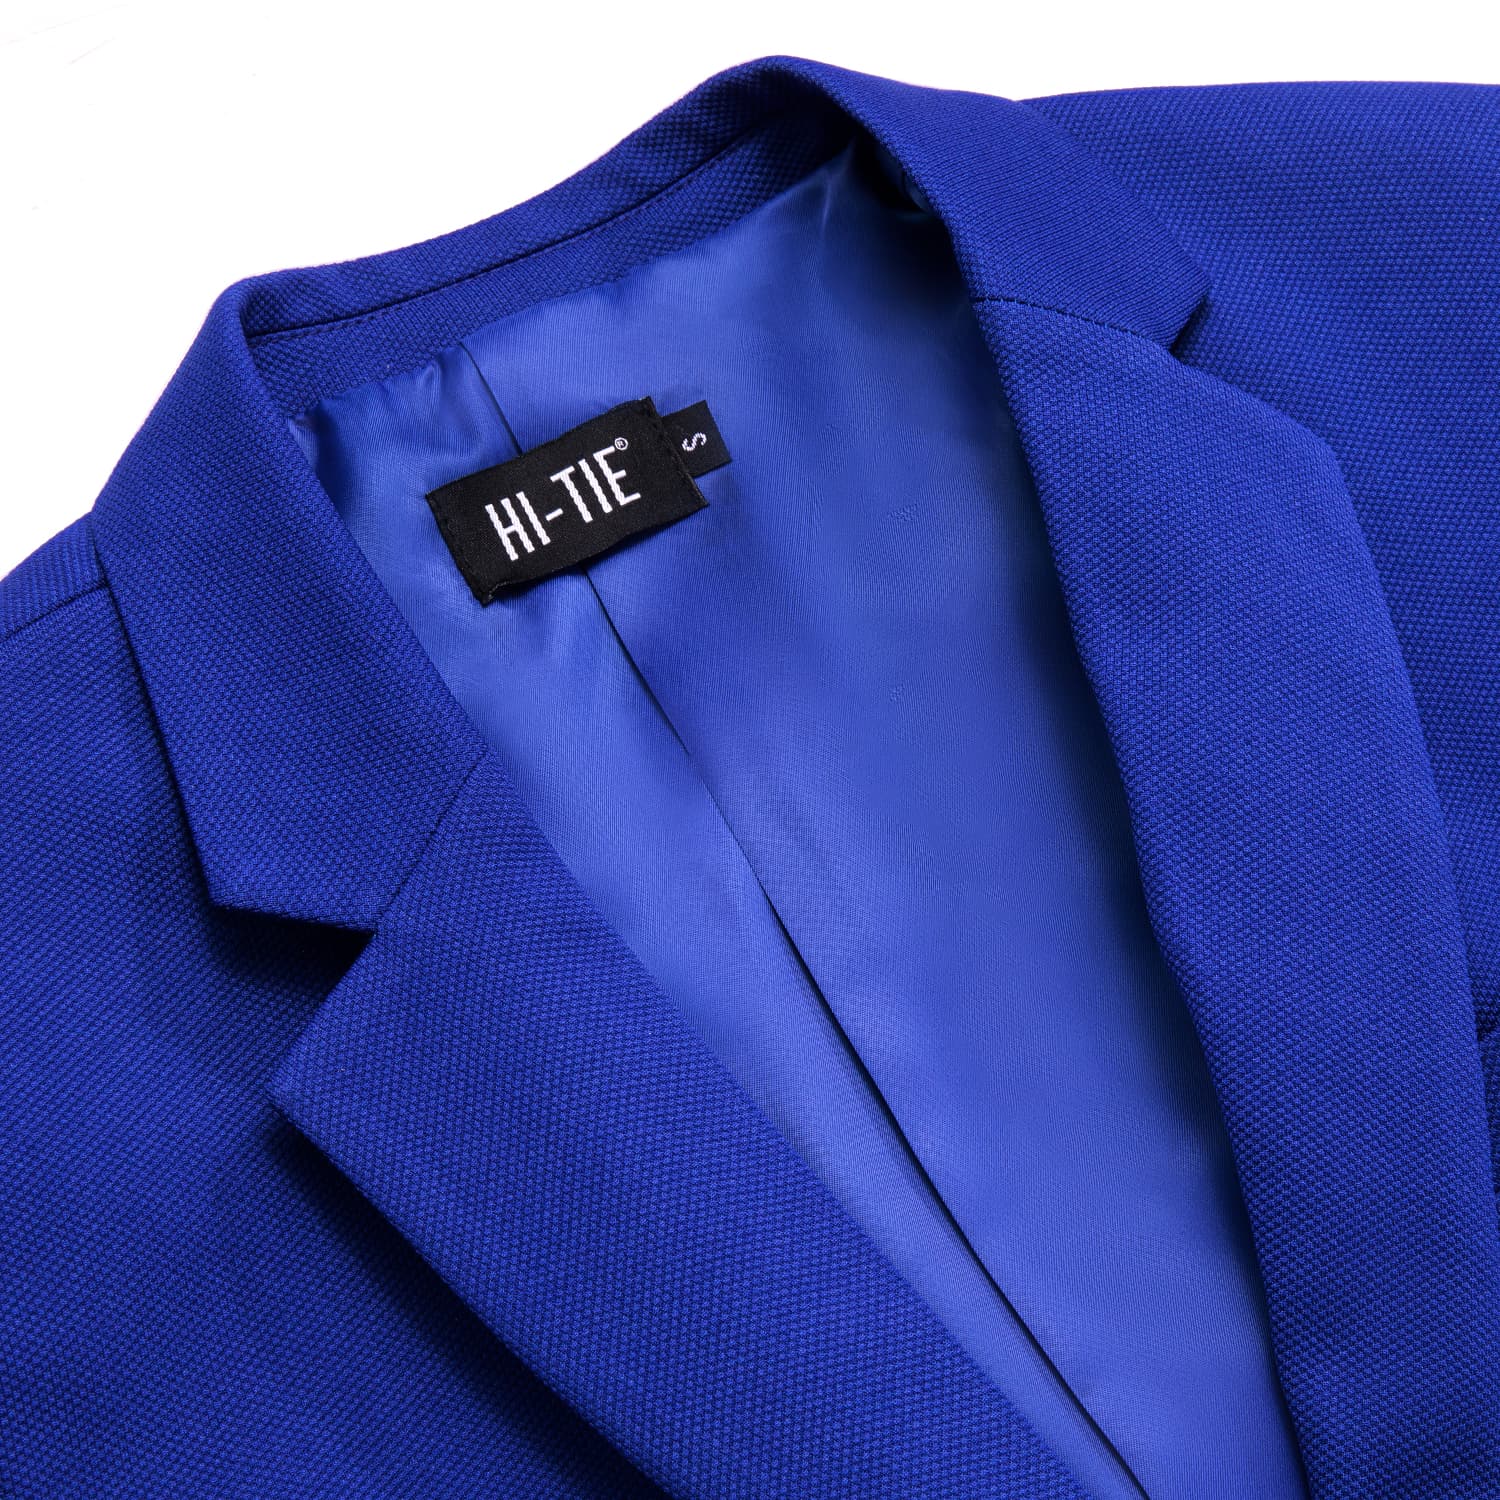 Hi-Tie Business Daily Blazer Blue Men's Suit Jacket Slim Fit Coat